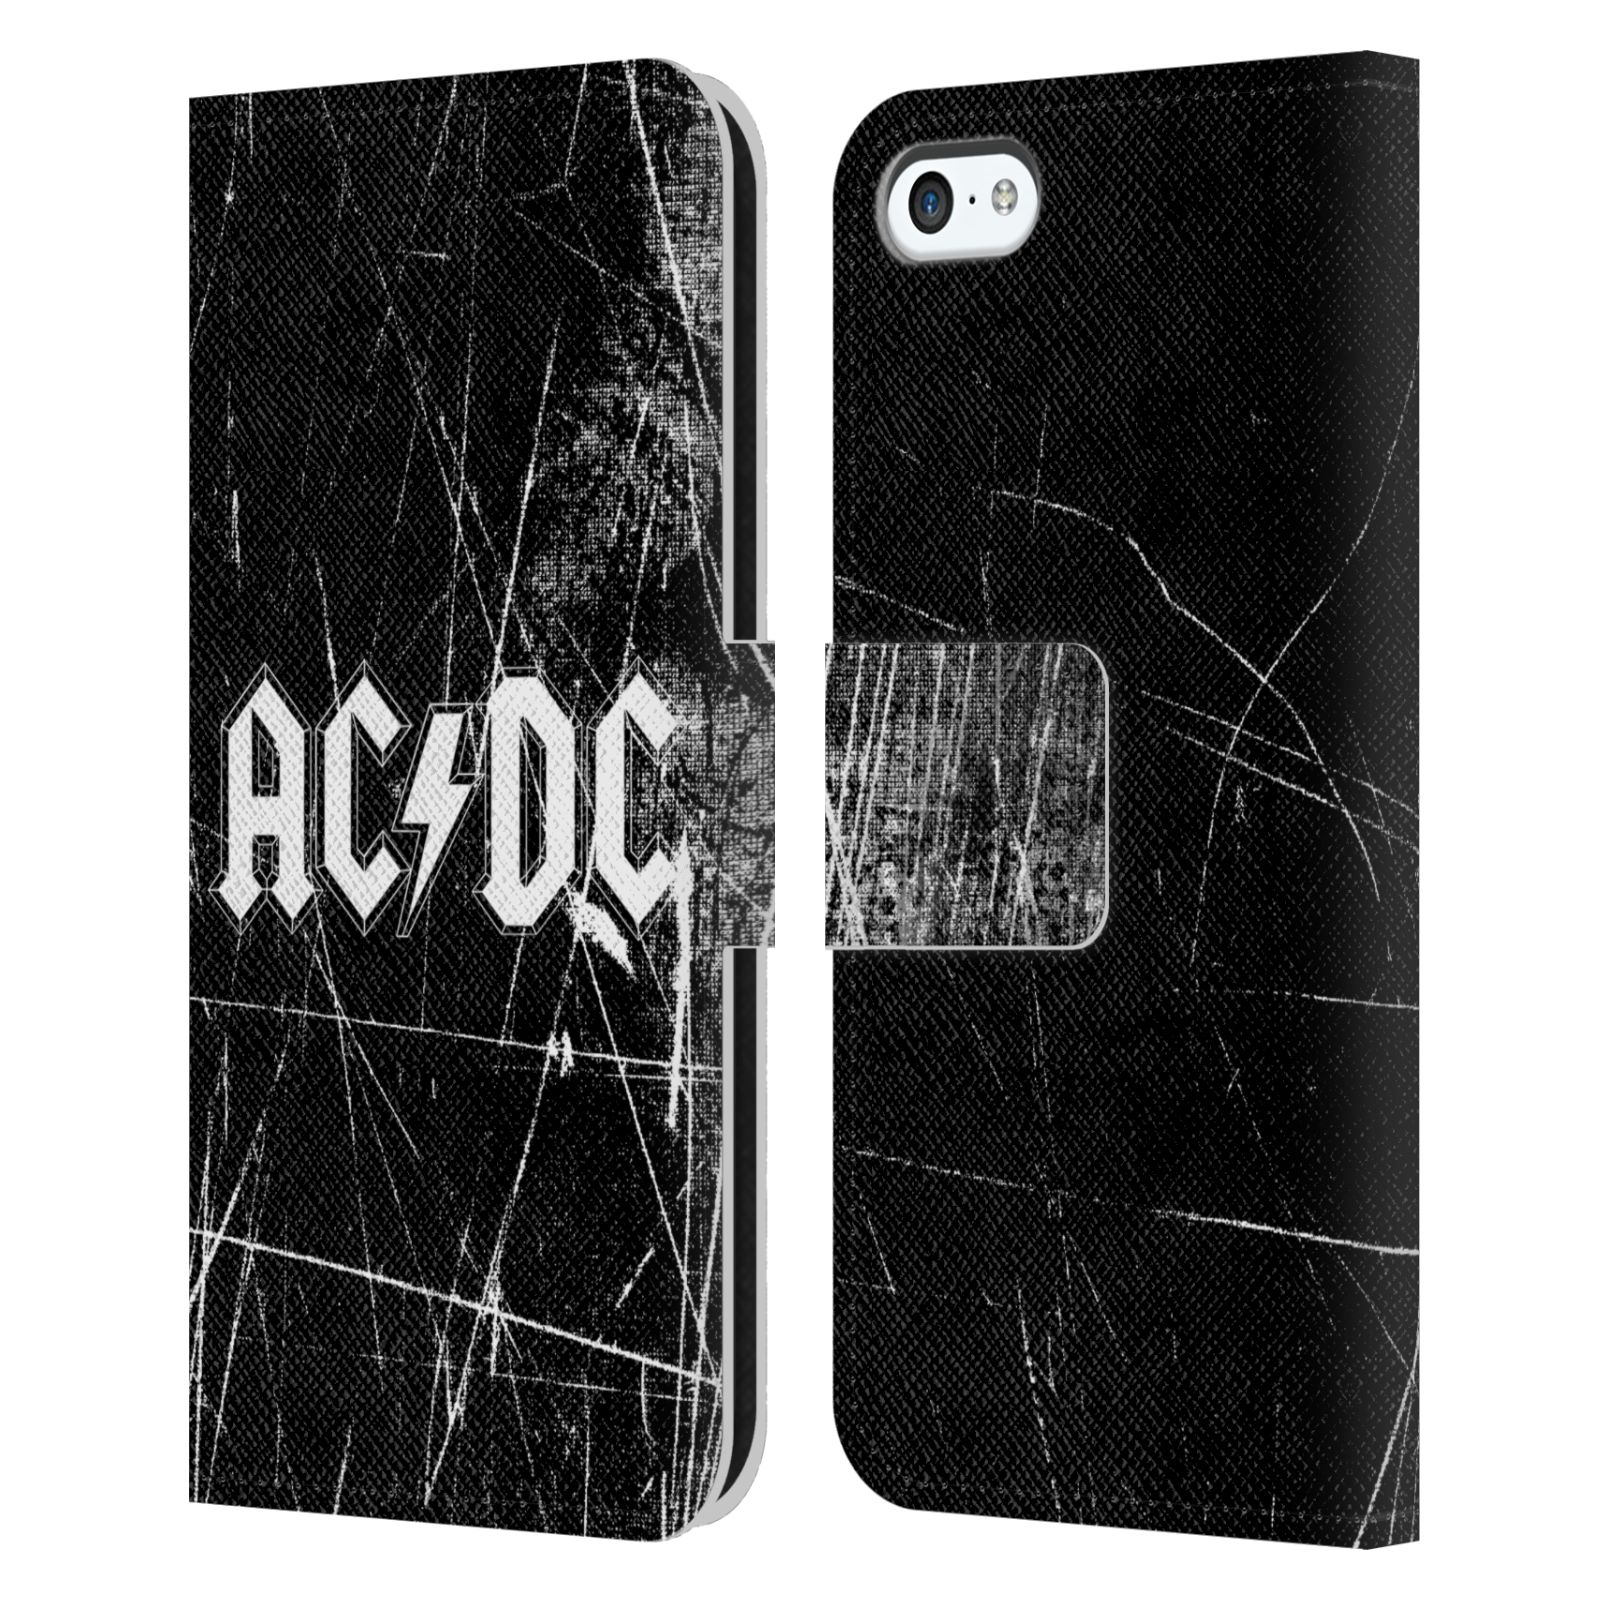 Pouzdro na mobil Apple Iphone 5C - HEAD CASE - Rocková skupin ACDC - černobílý nadpis